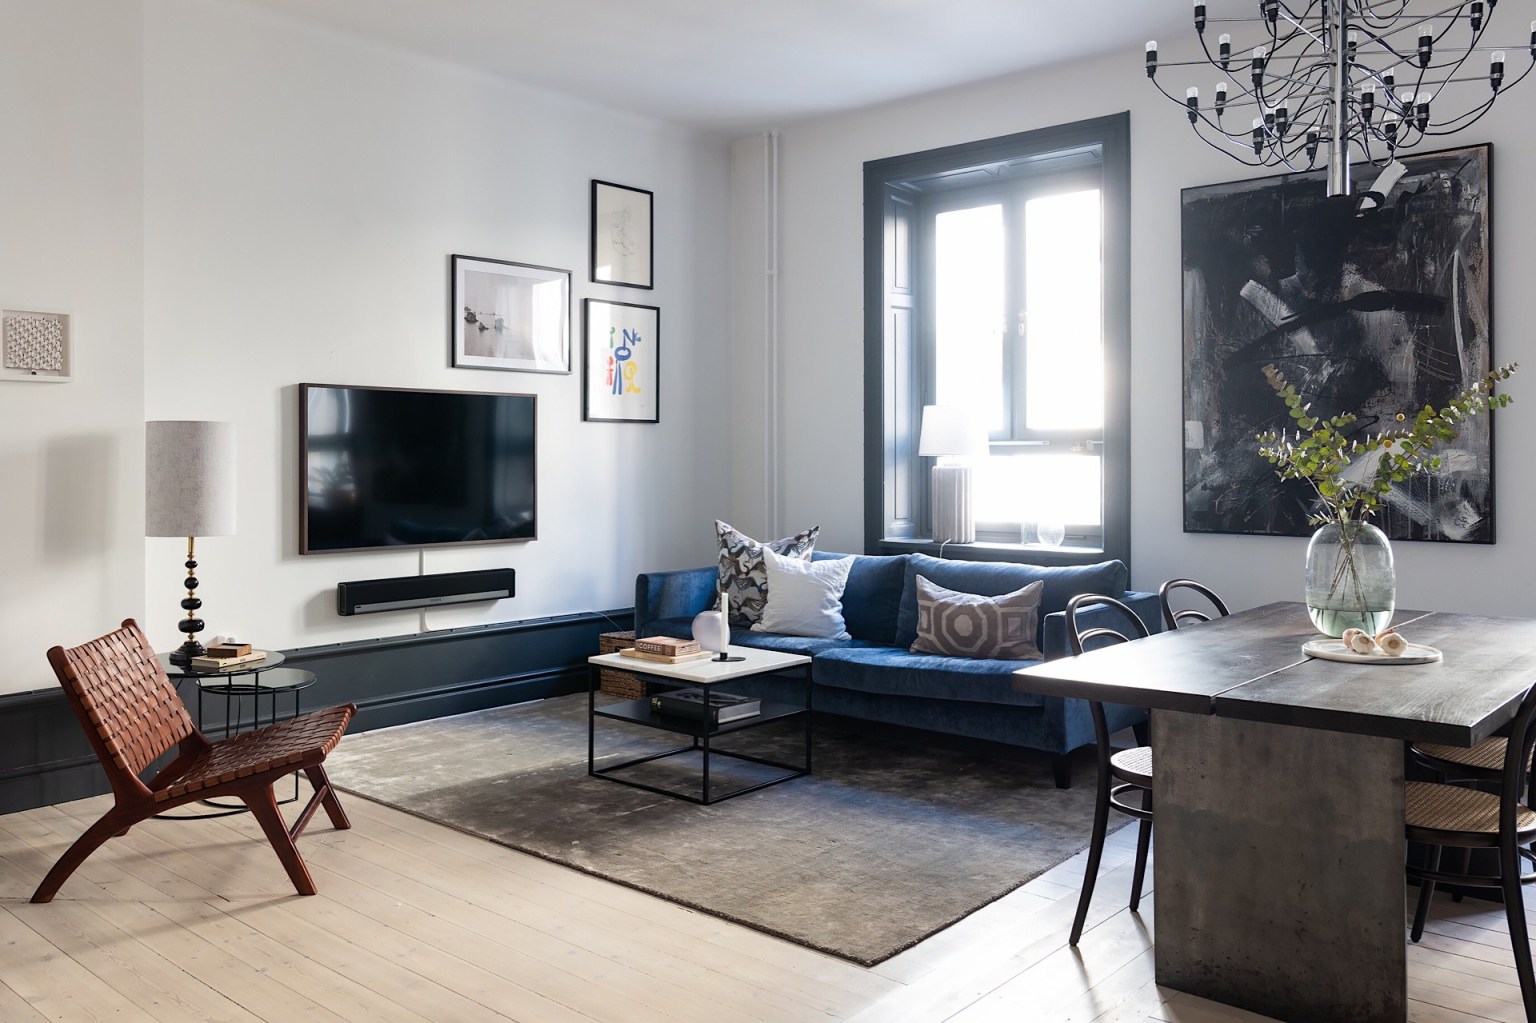 Sofa được lựa chọn màu xanh cổ vịt, sàn gỗ và tường màu trắng. Những màu nền tươi sáng giúp điểm nhấn trang trí màu đen thêm nổi bật sắc nét hơn.